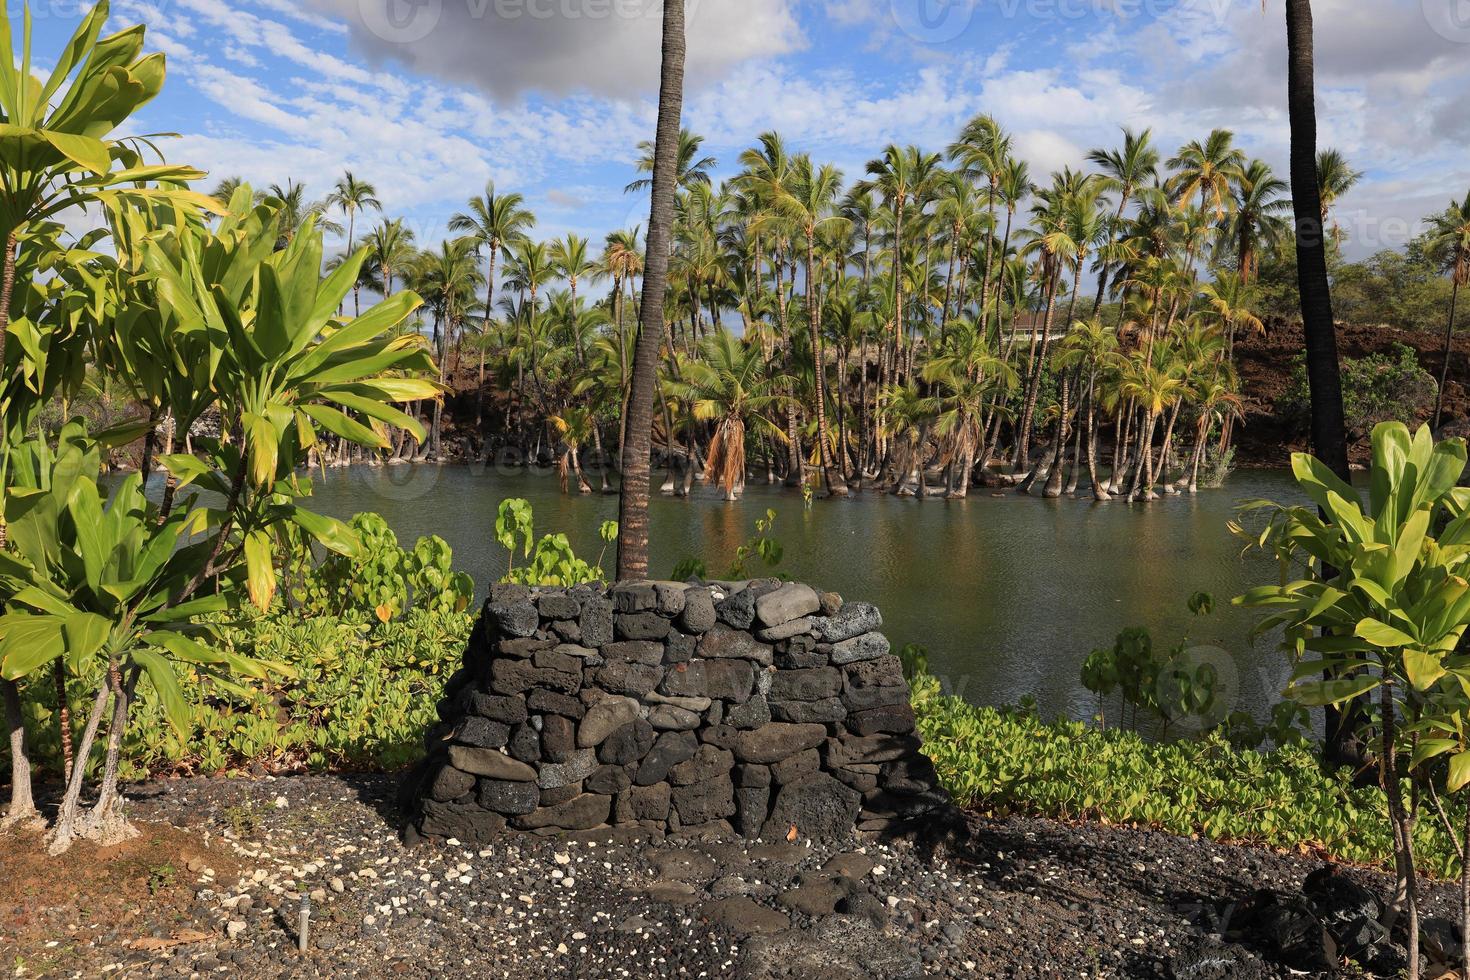 visvijver in kalahuipuaa historisch park op het grote eiland hawaï foto